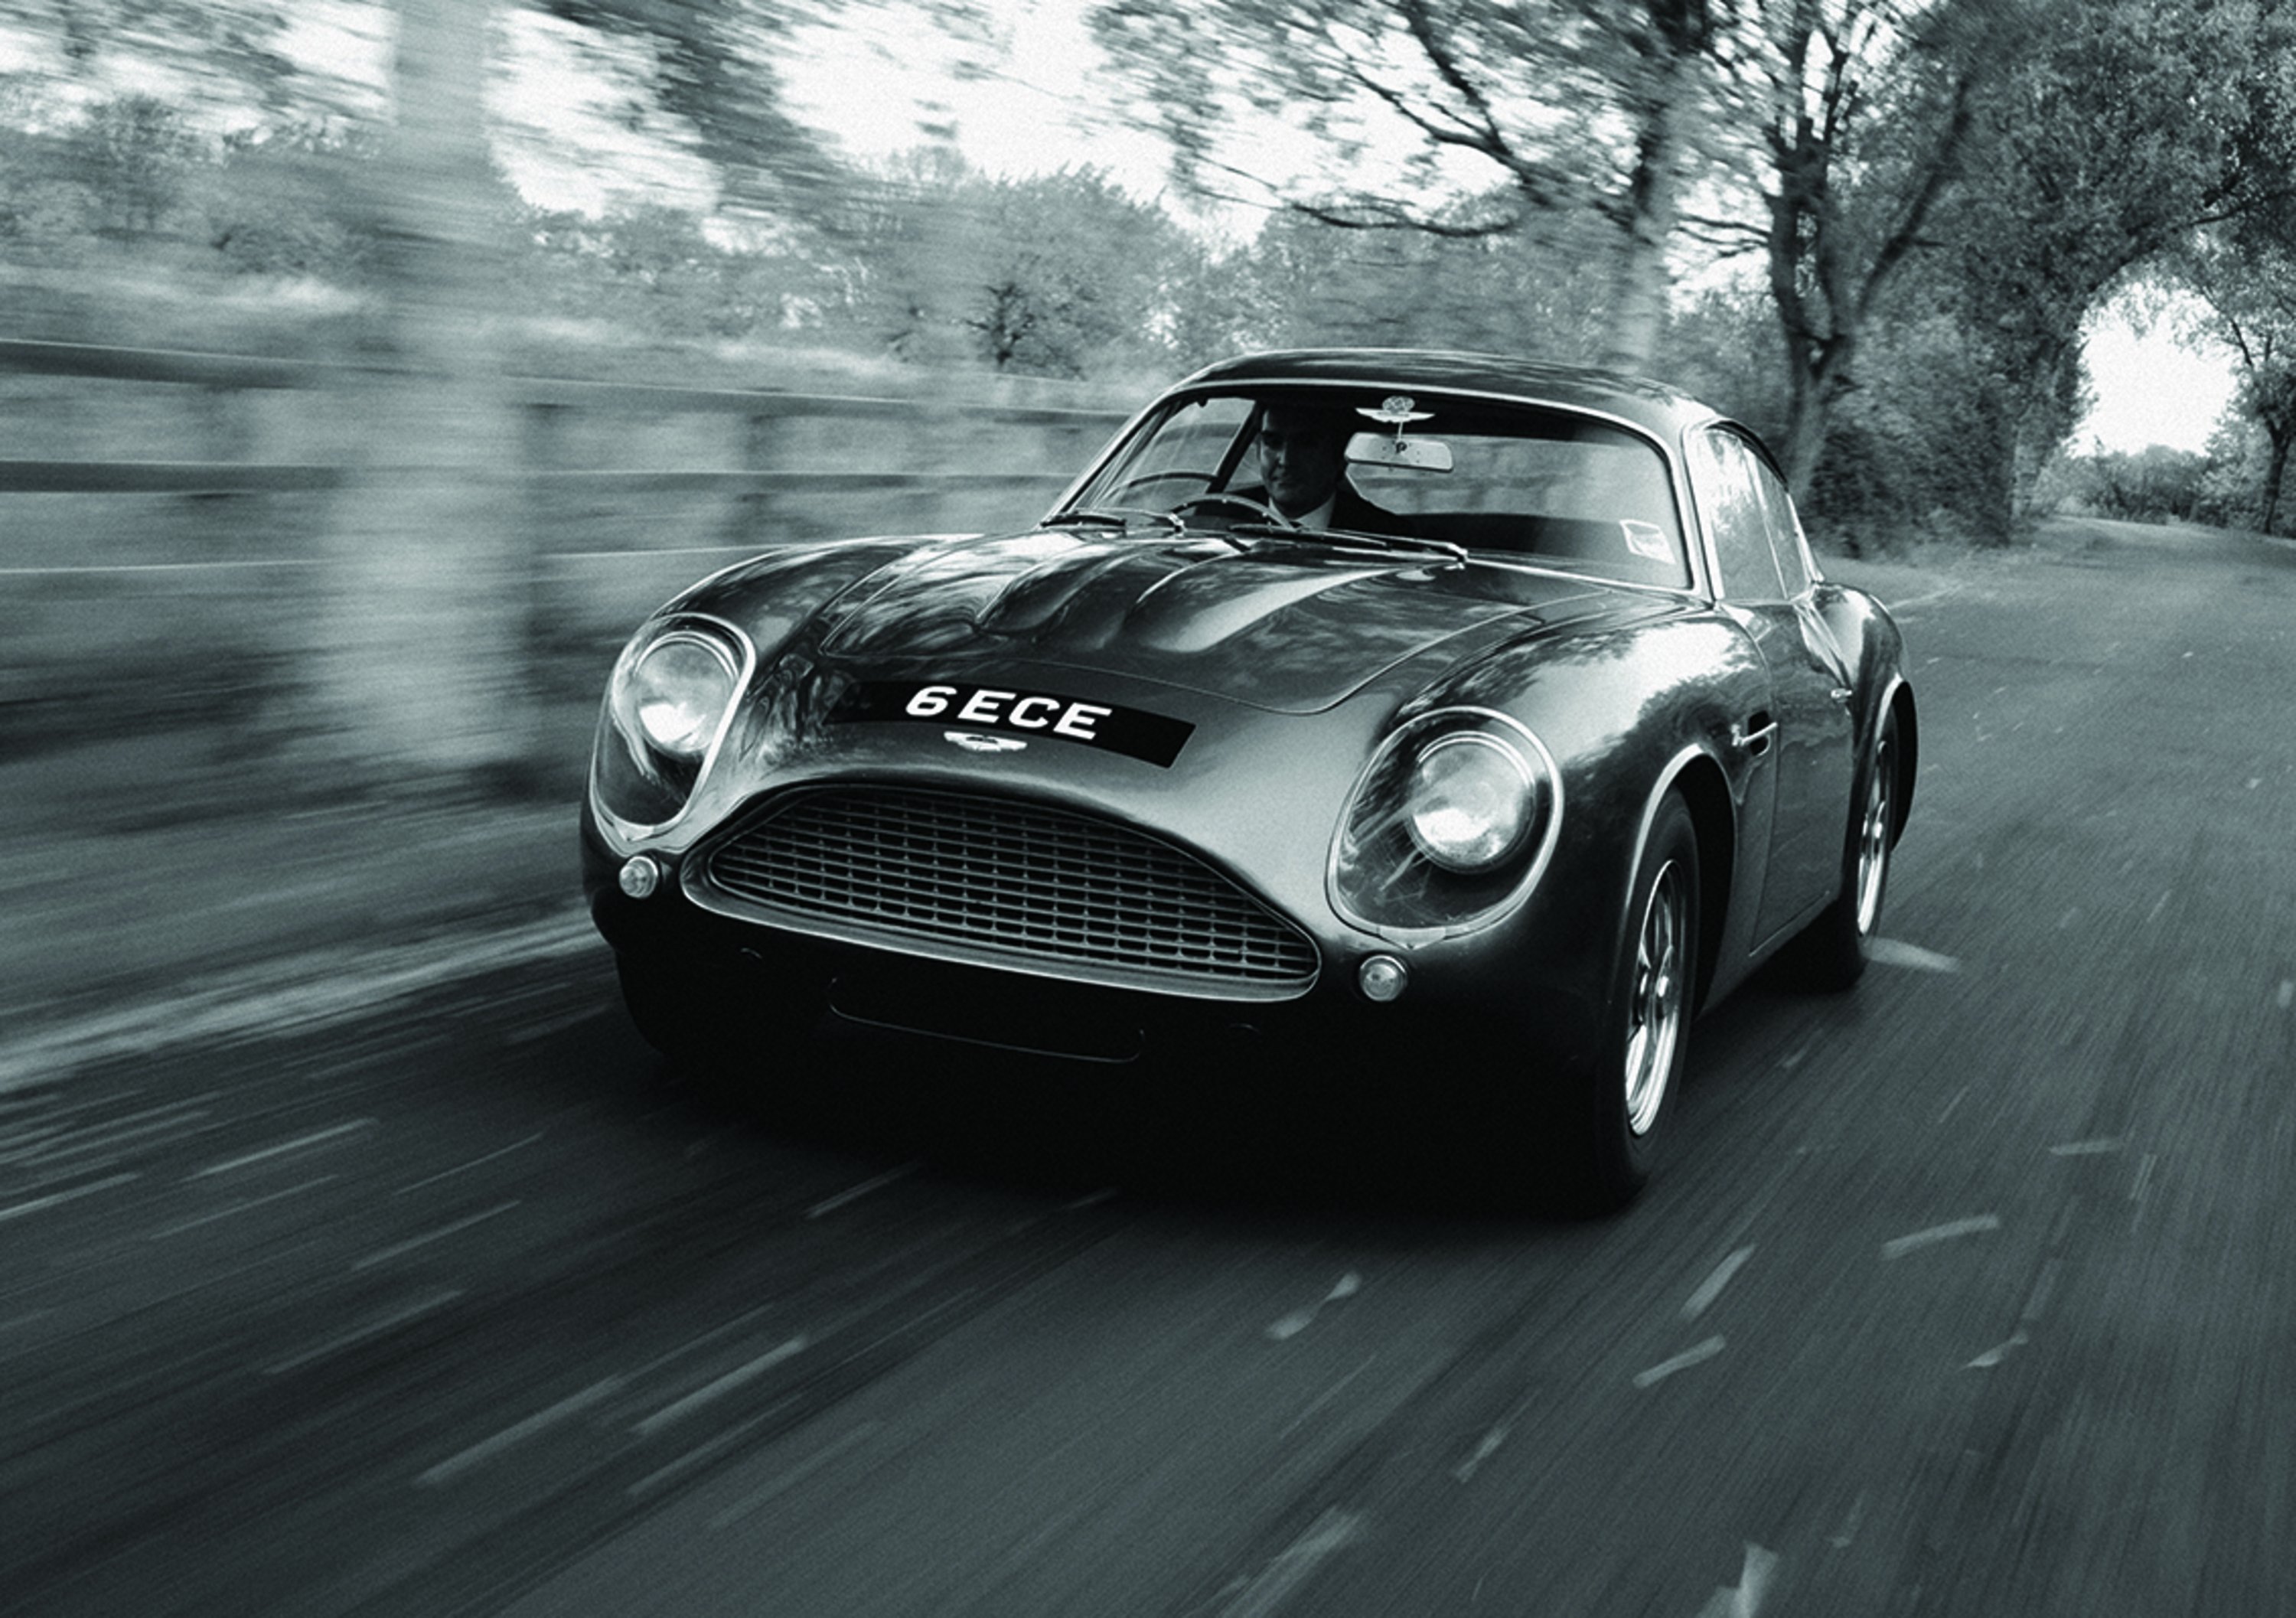 Aston Martin, due edizioni limitate per il centenario di Zagato